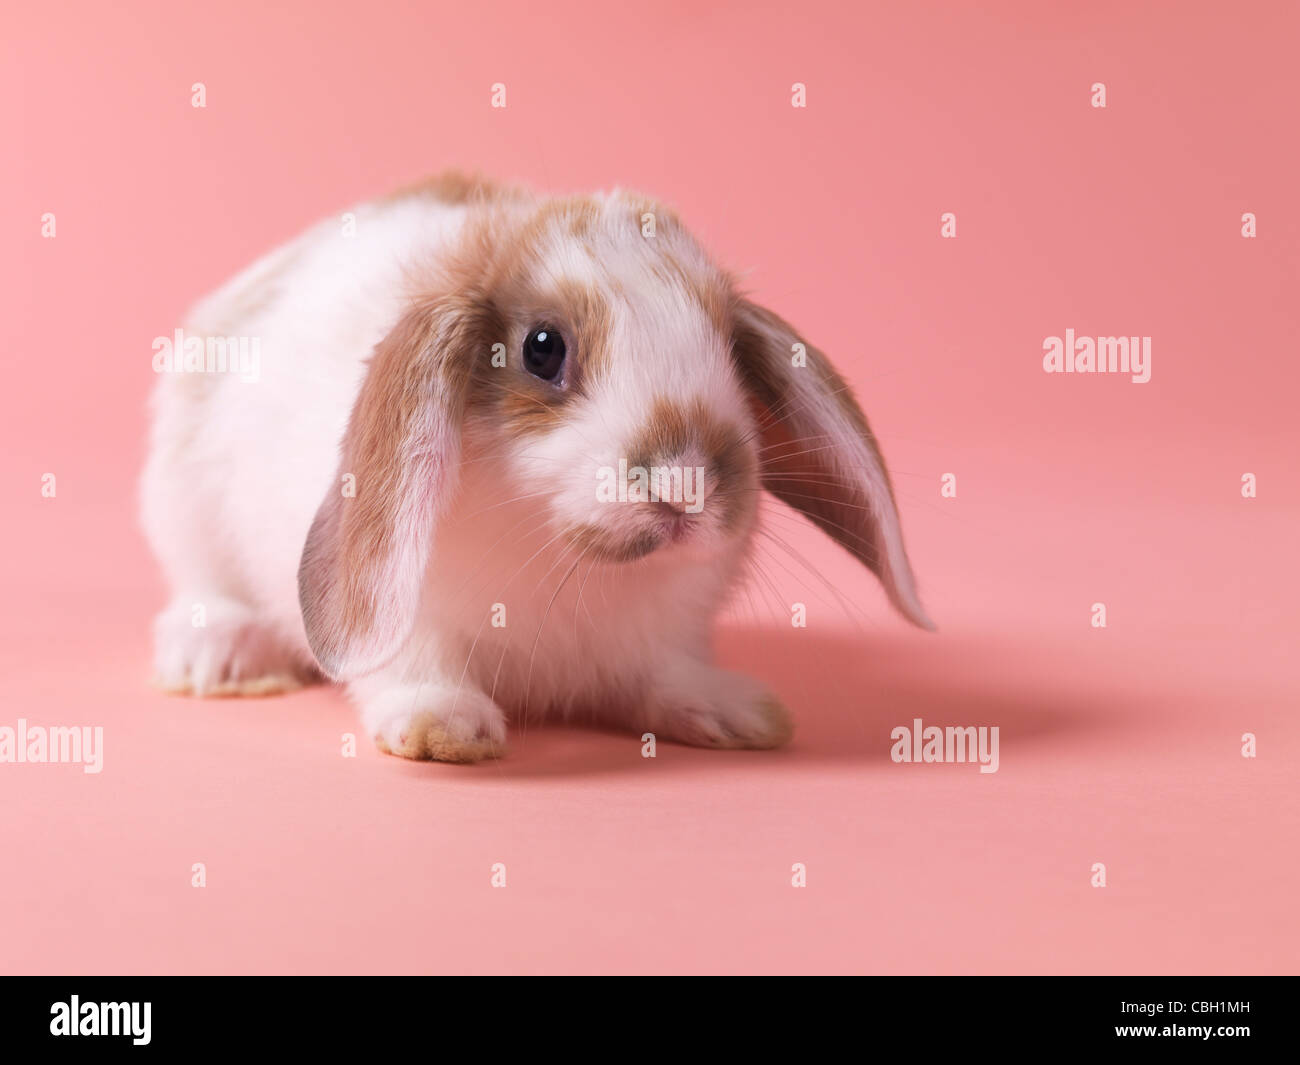 Piccolo grazioso coniglietto coniglio isolato su sfondo rosa Foto Stock